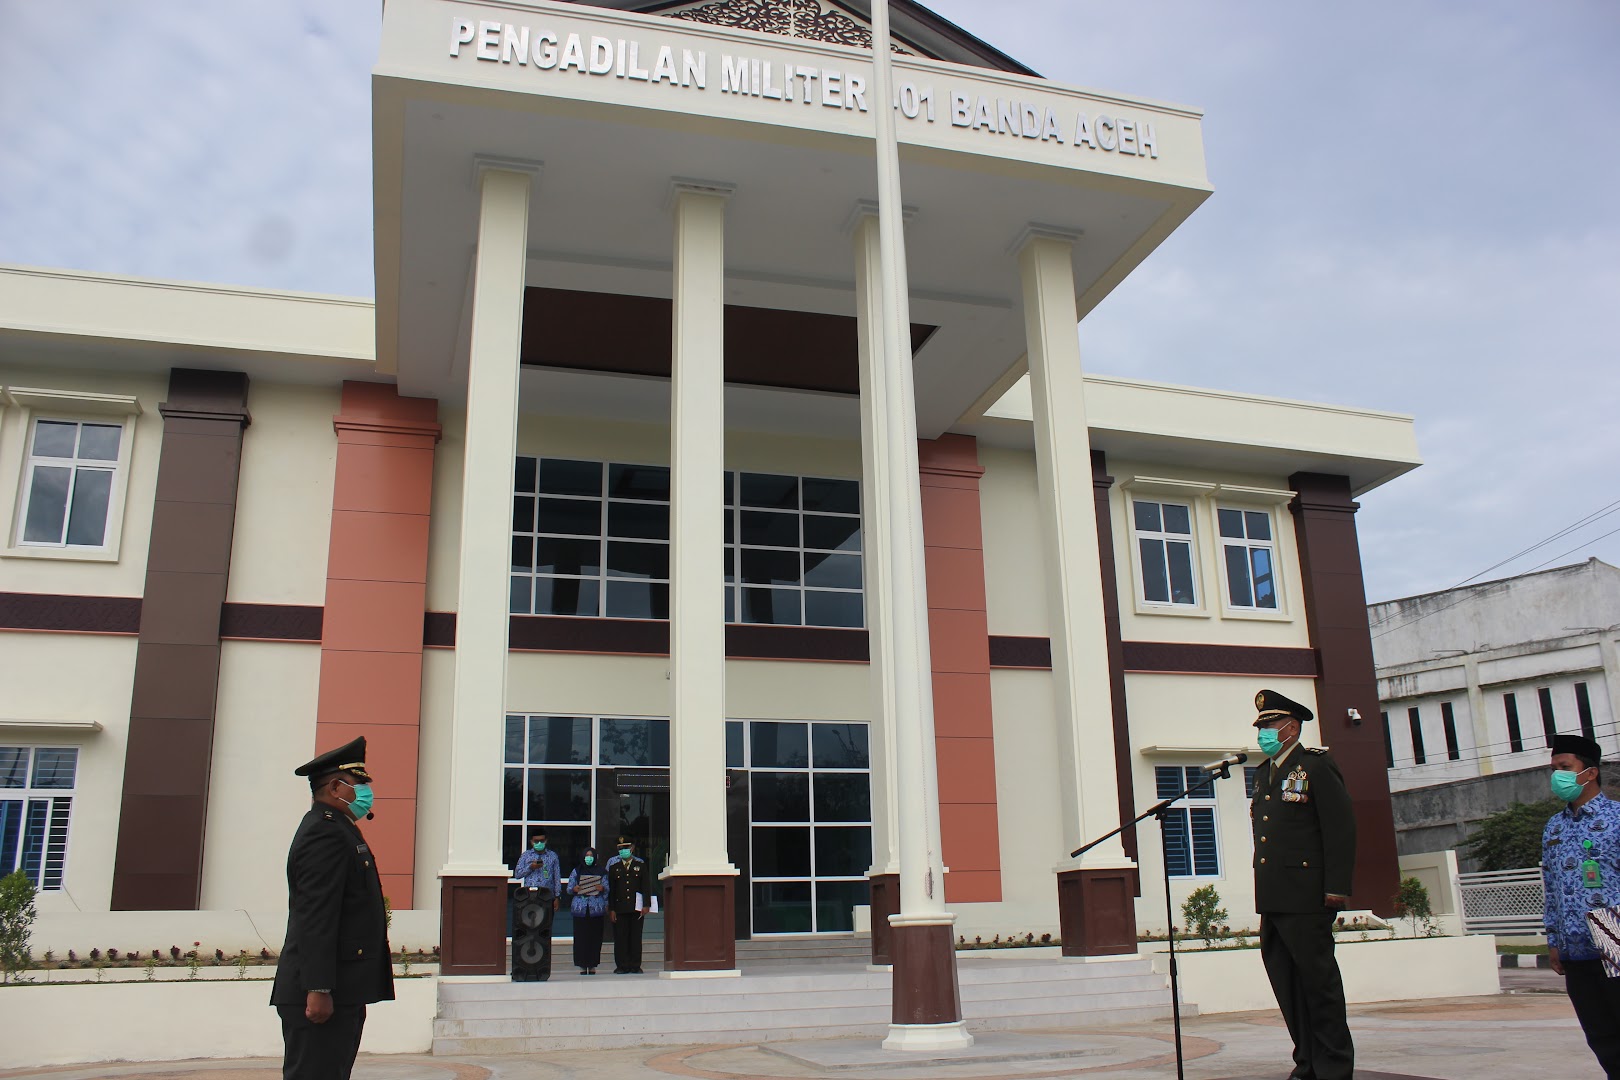 Pengadilan Militer I - 01 Banda Aceh Photo